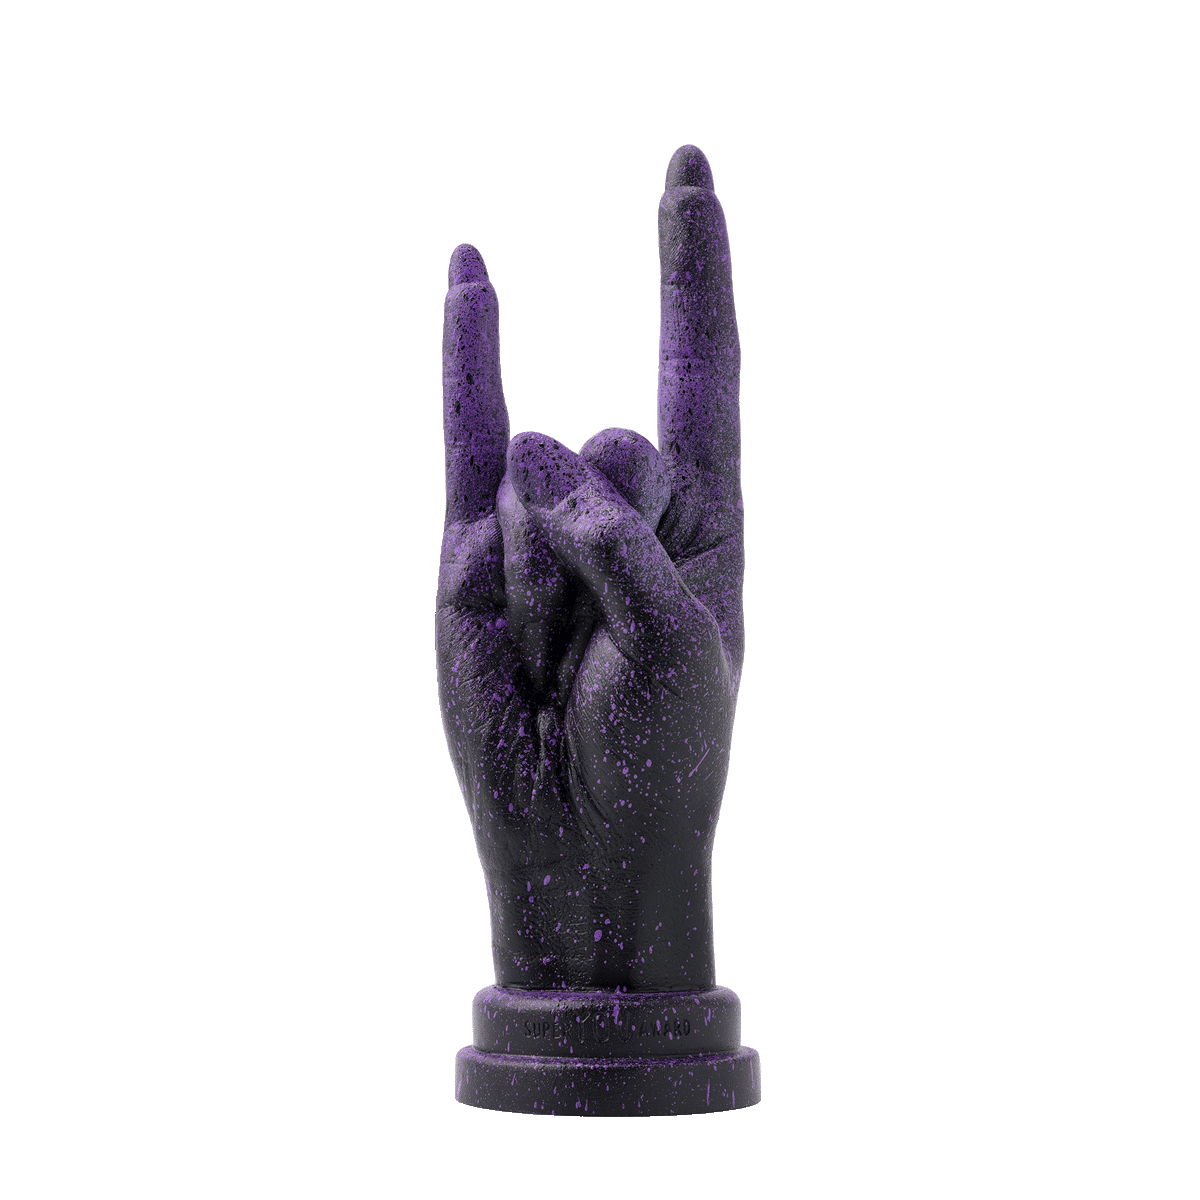 ⚡︎-SUPER-YOU-AWARD-cool-unique-gift-idea-empowering-uniqueness-YOU-ROCK-hand-gesture-collectible-black-violet-dust-splash-decorative-sculpture-ART-ROCKS-1-Aivaras-Simonis-photo